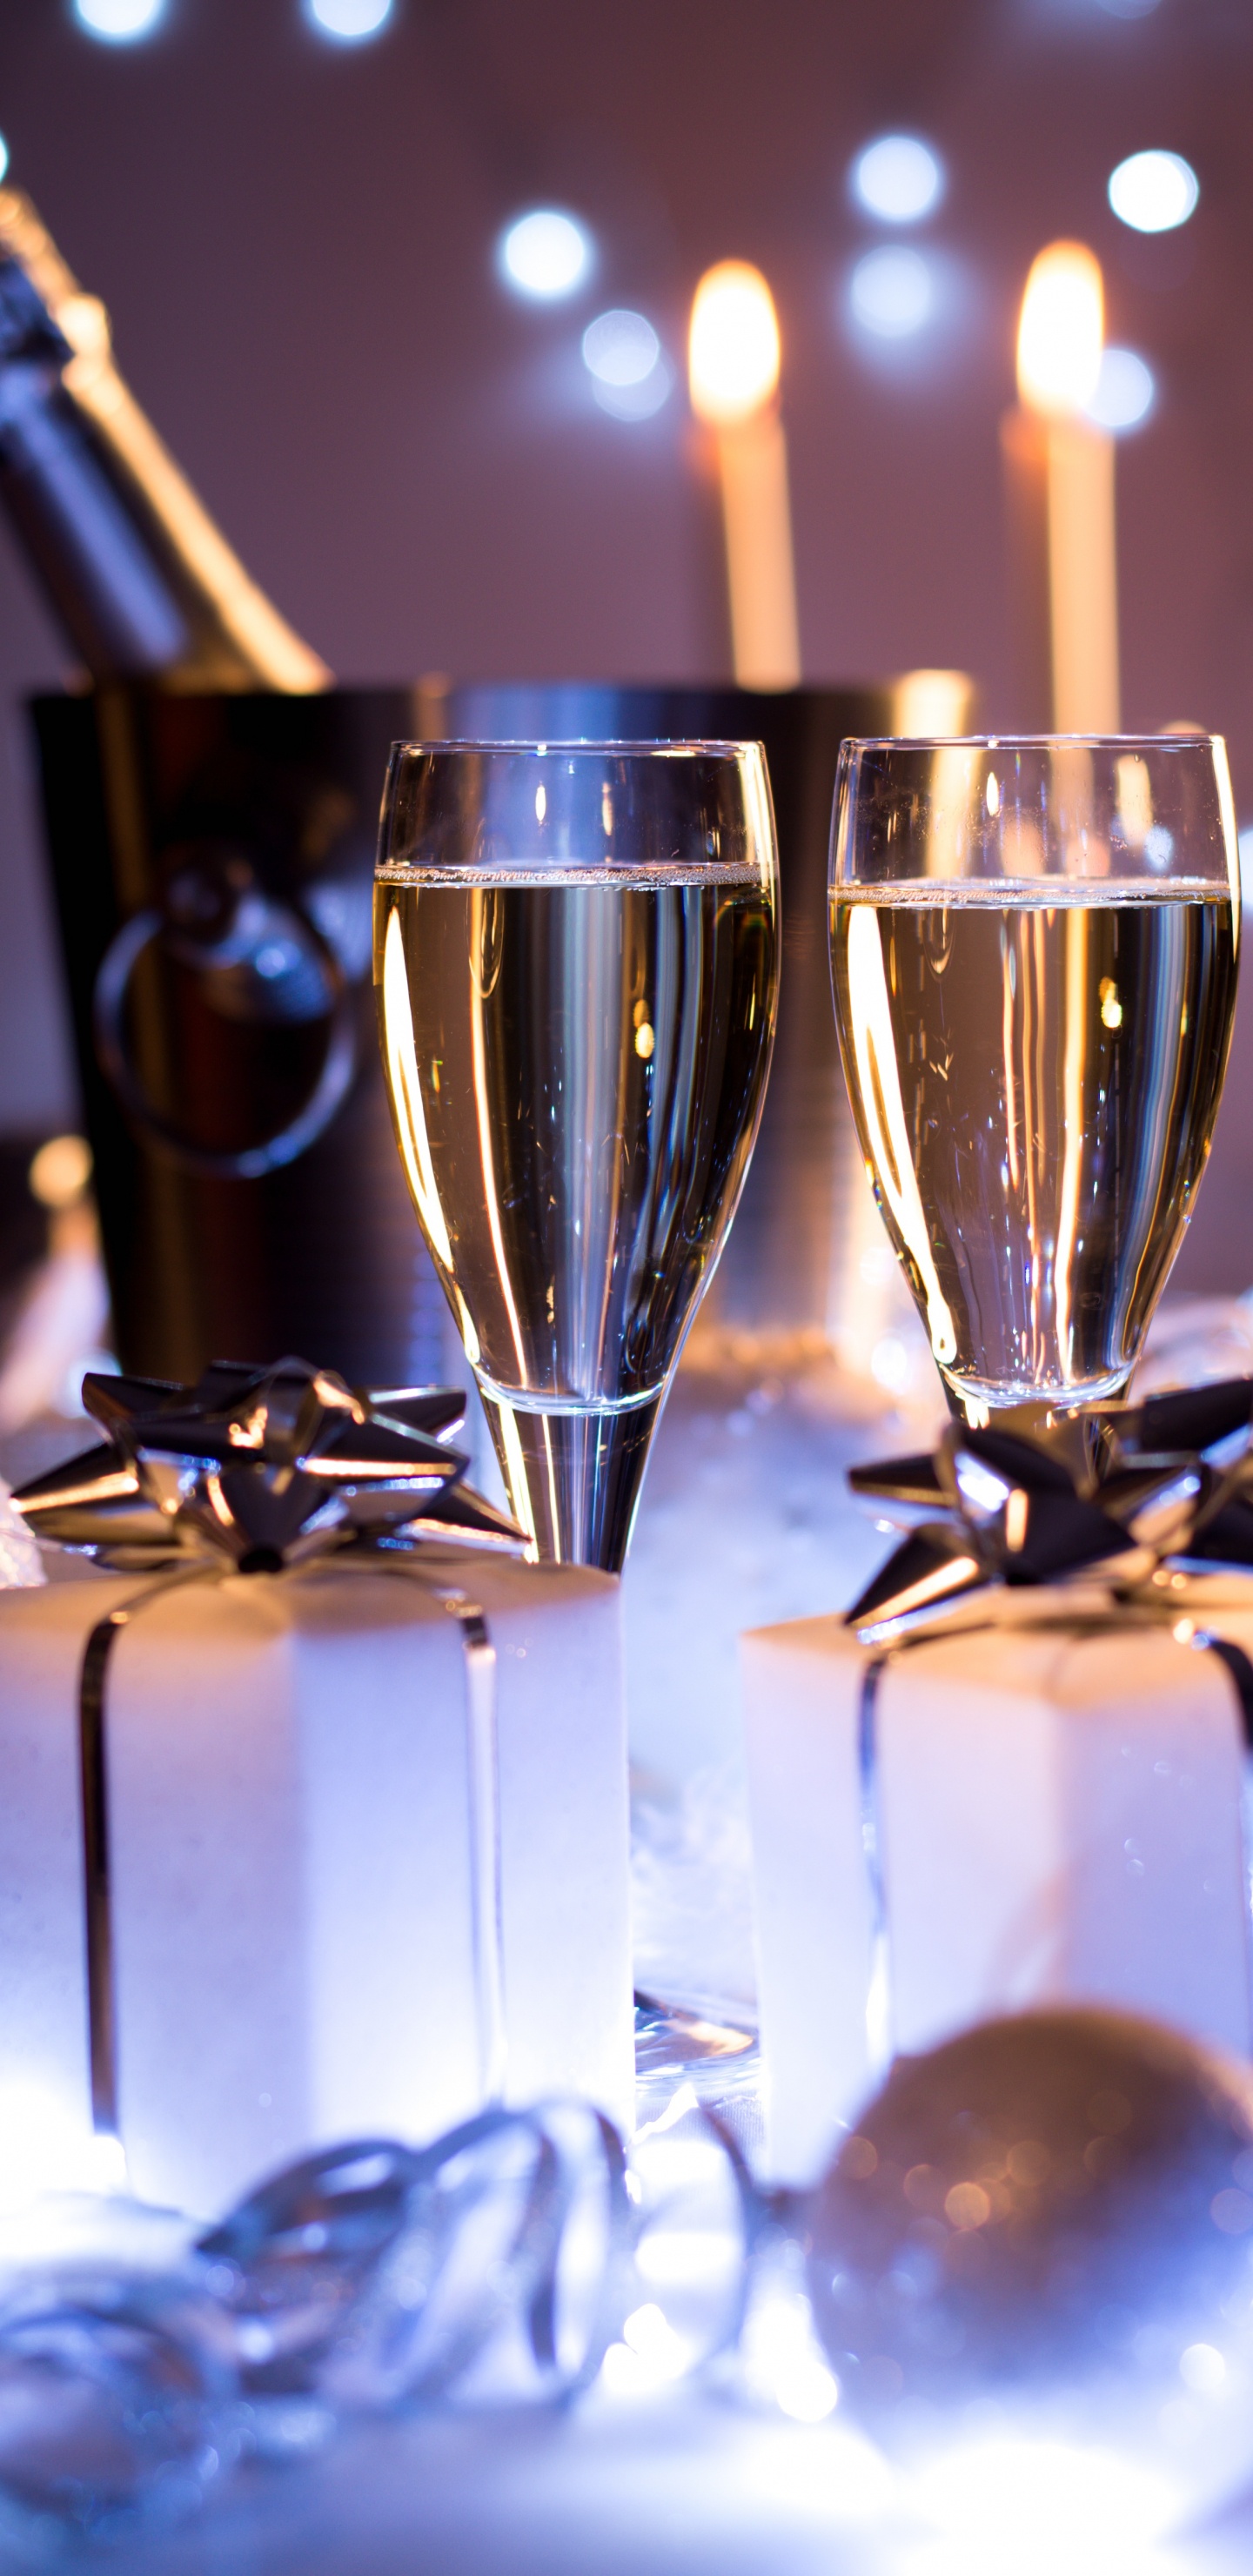 香槟, 葡萄酒, 新年前夕, 新的一年, 仍然生活 壁纸 1440x2960 允许